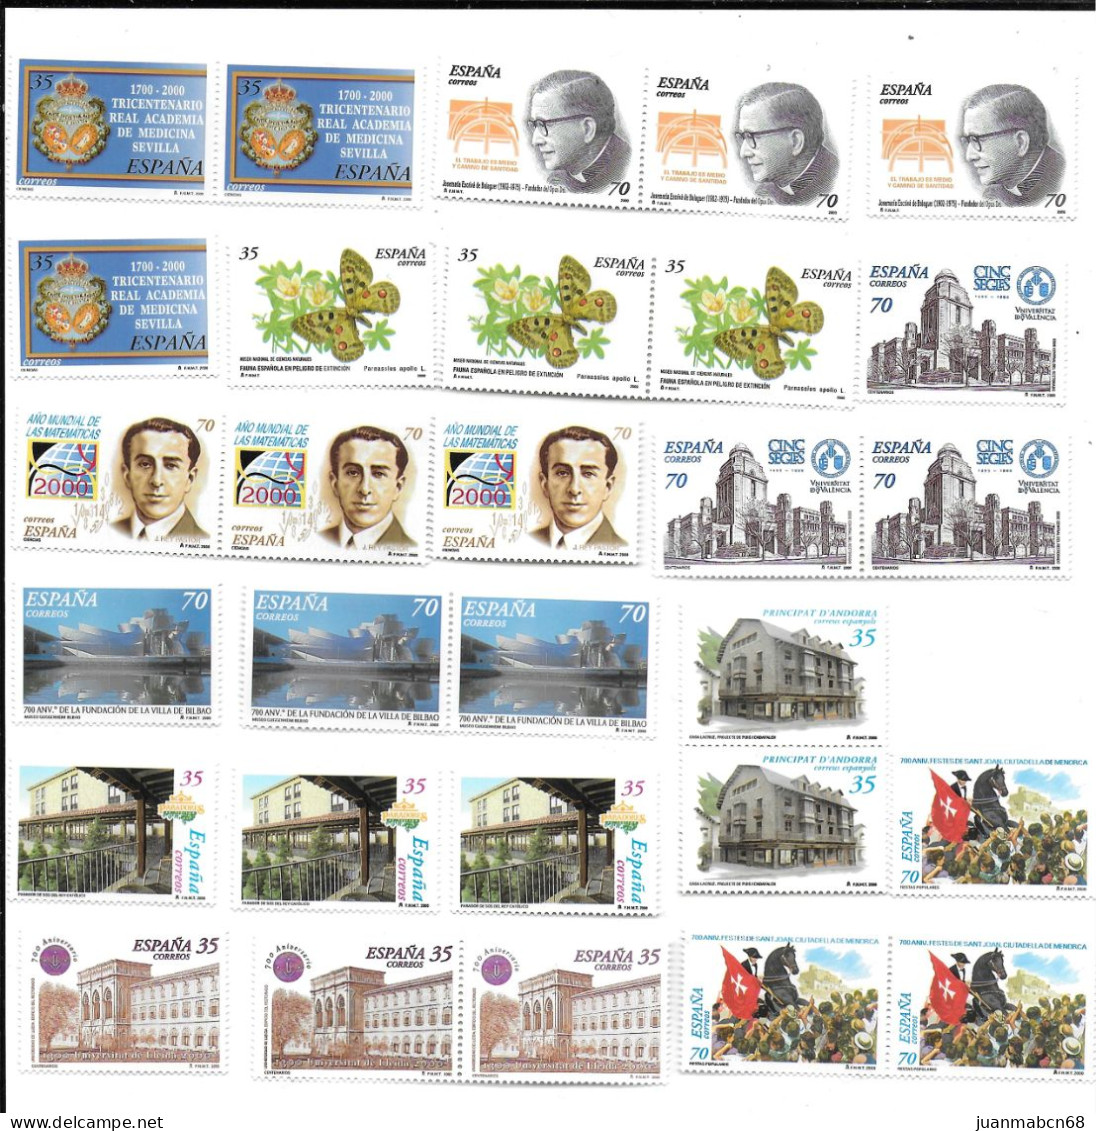 Lote de 190 sellos nuevos(2000 - 2004)